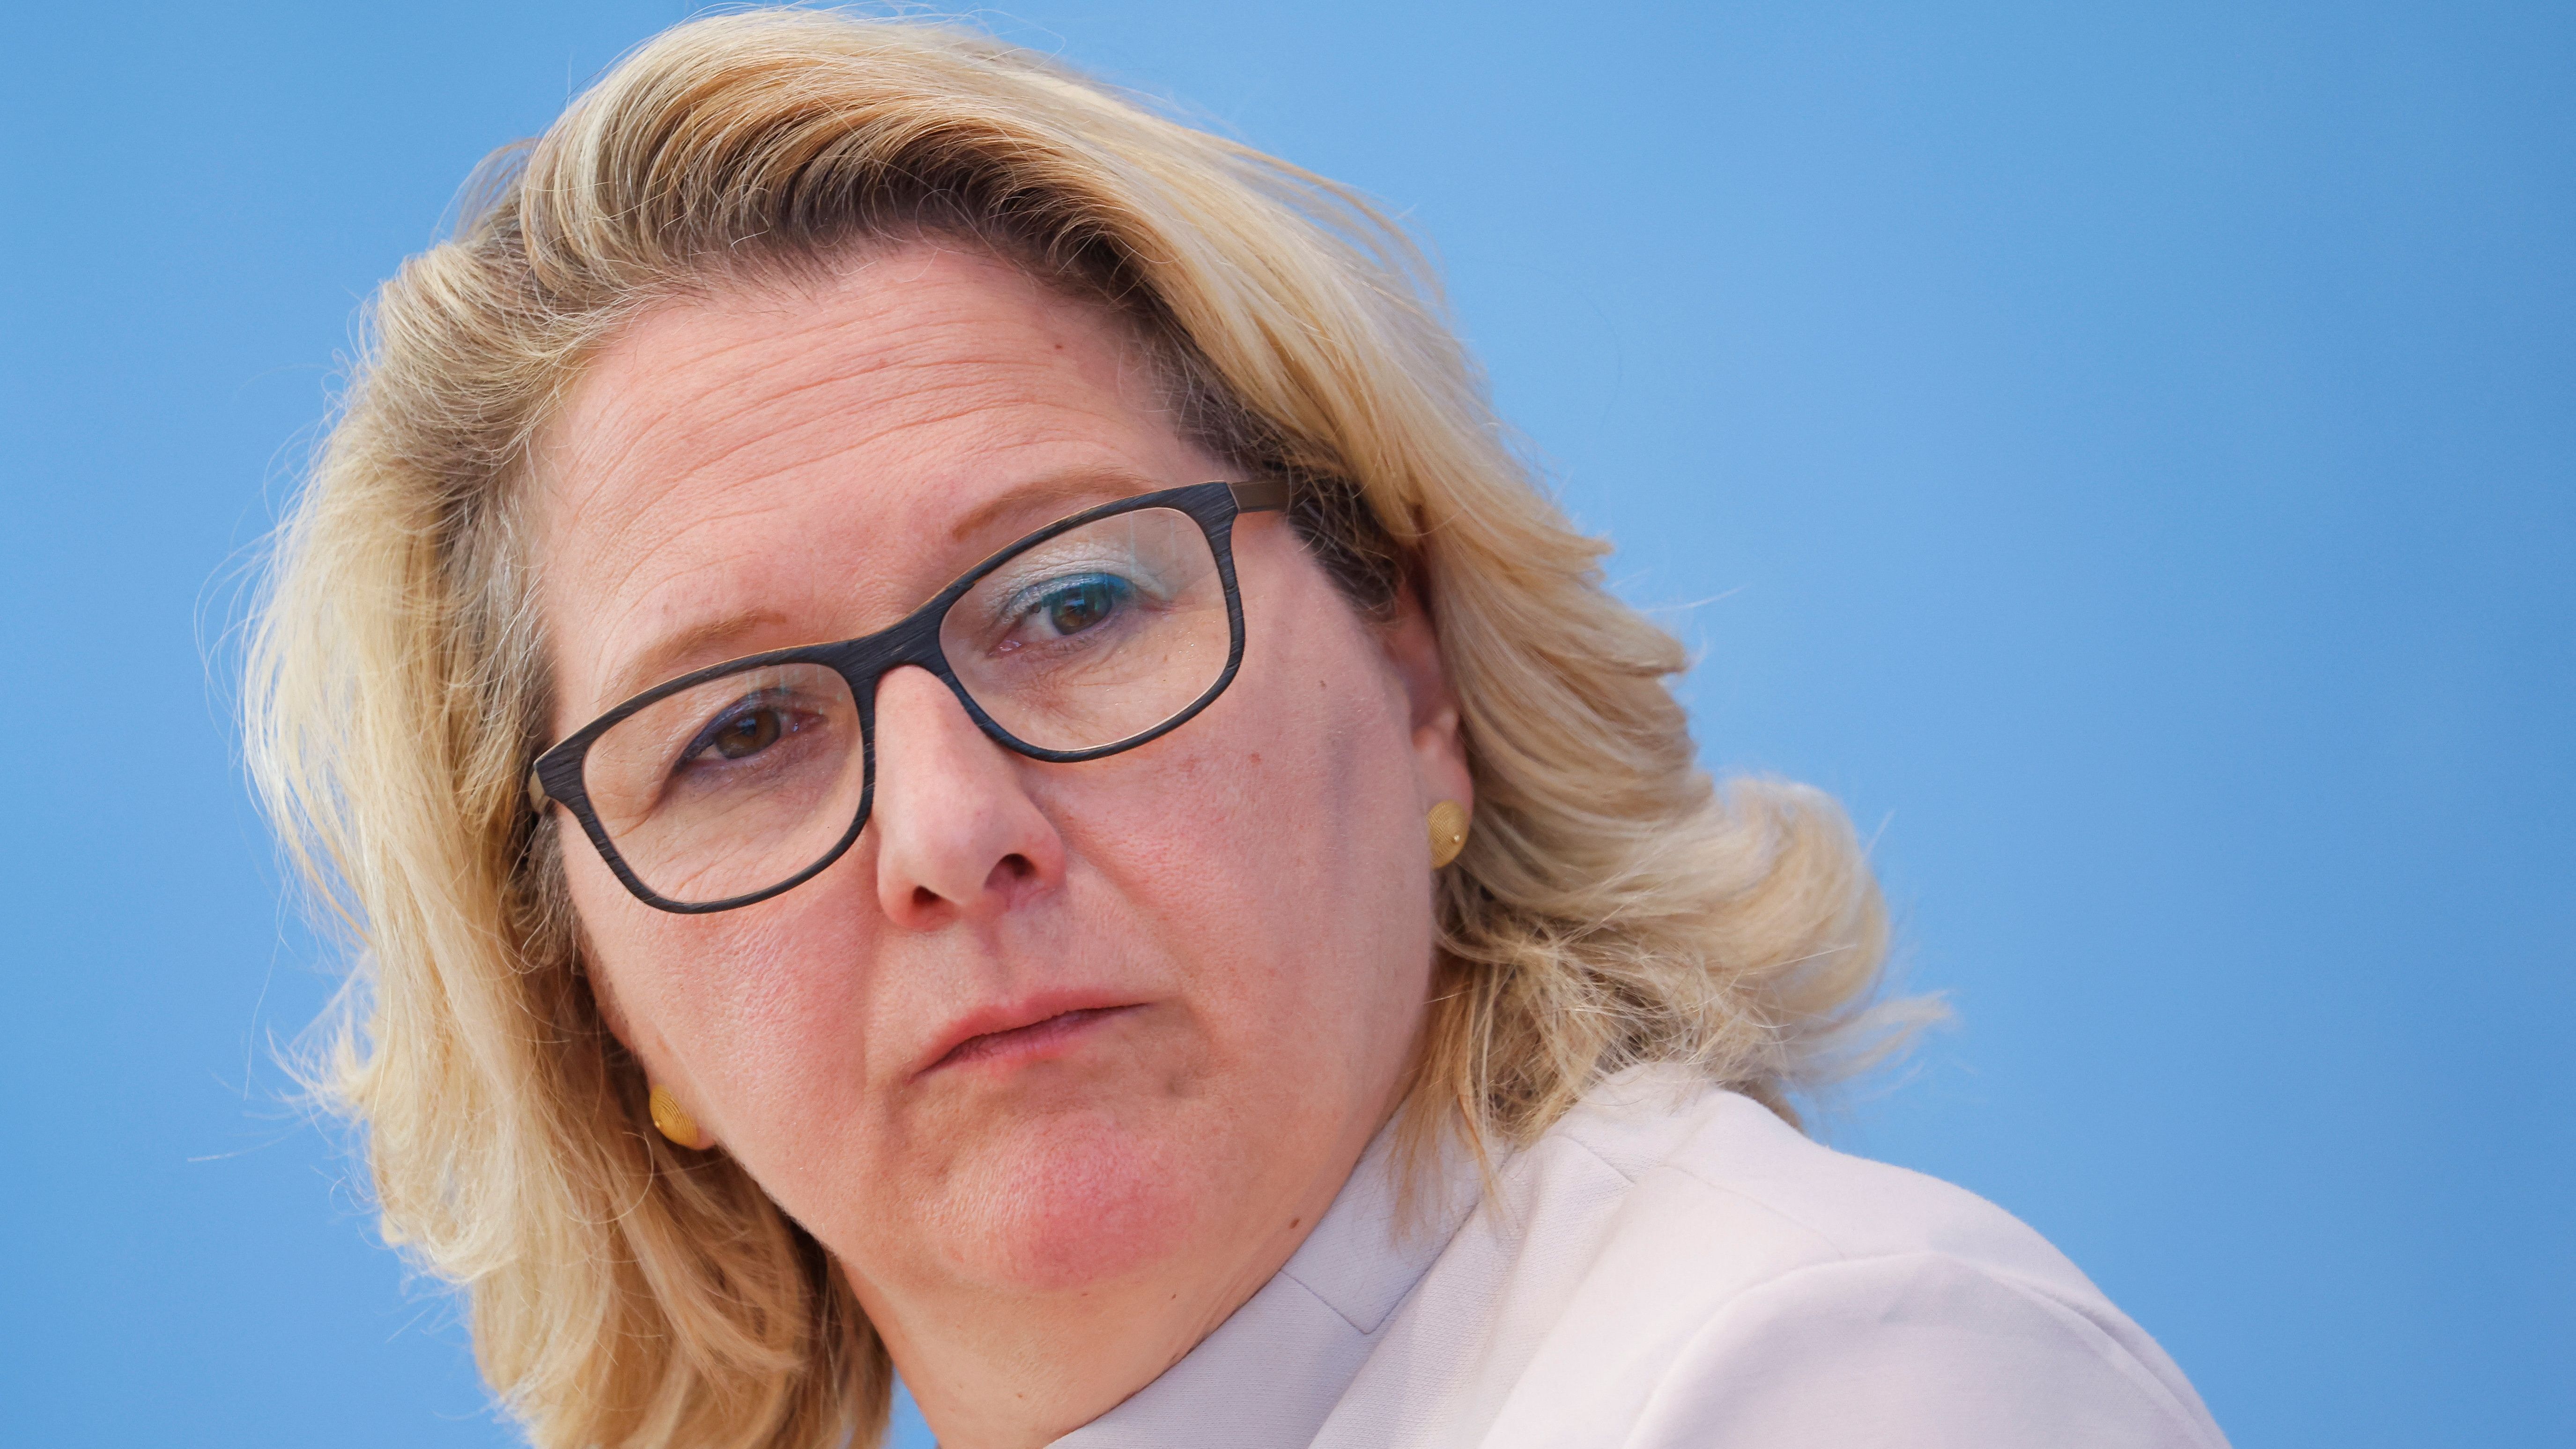 Bundesministerin für wirtschaftliche Zusammenarbeit und Entwicklung: Svenja Schulze (SPD).